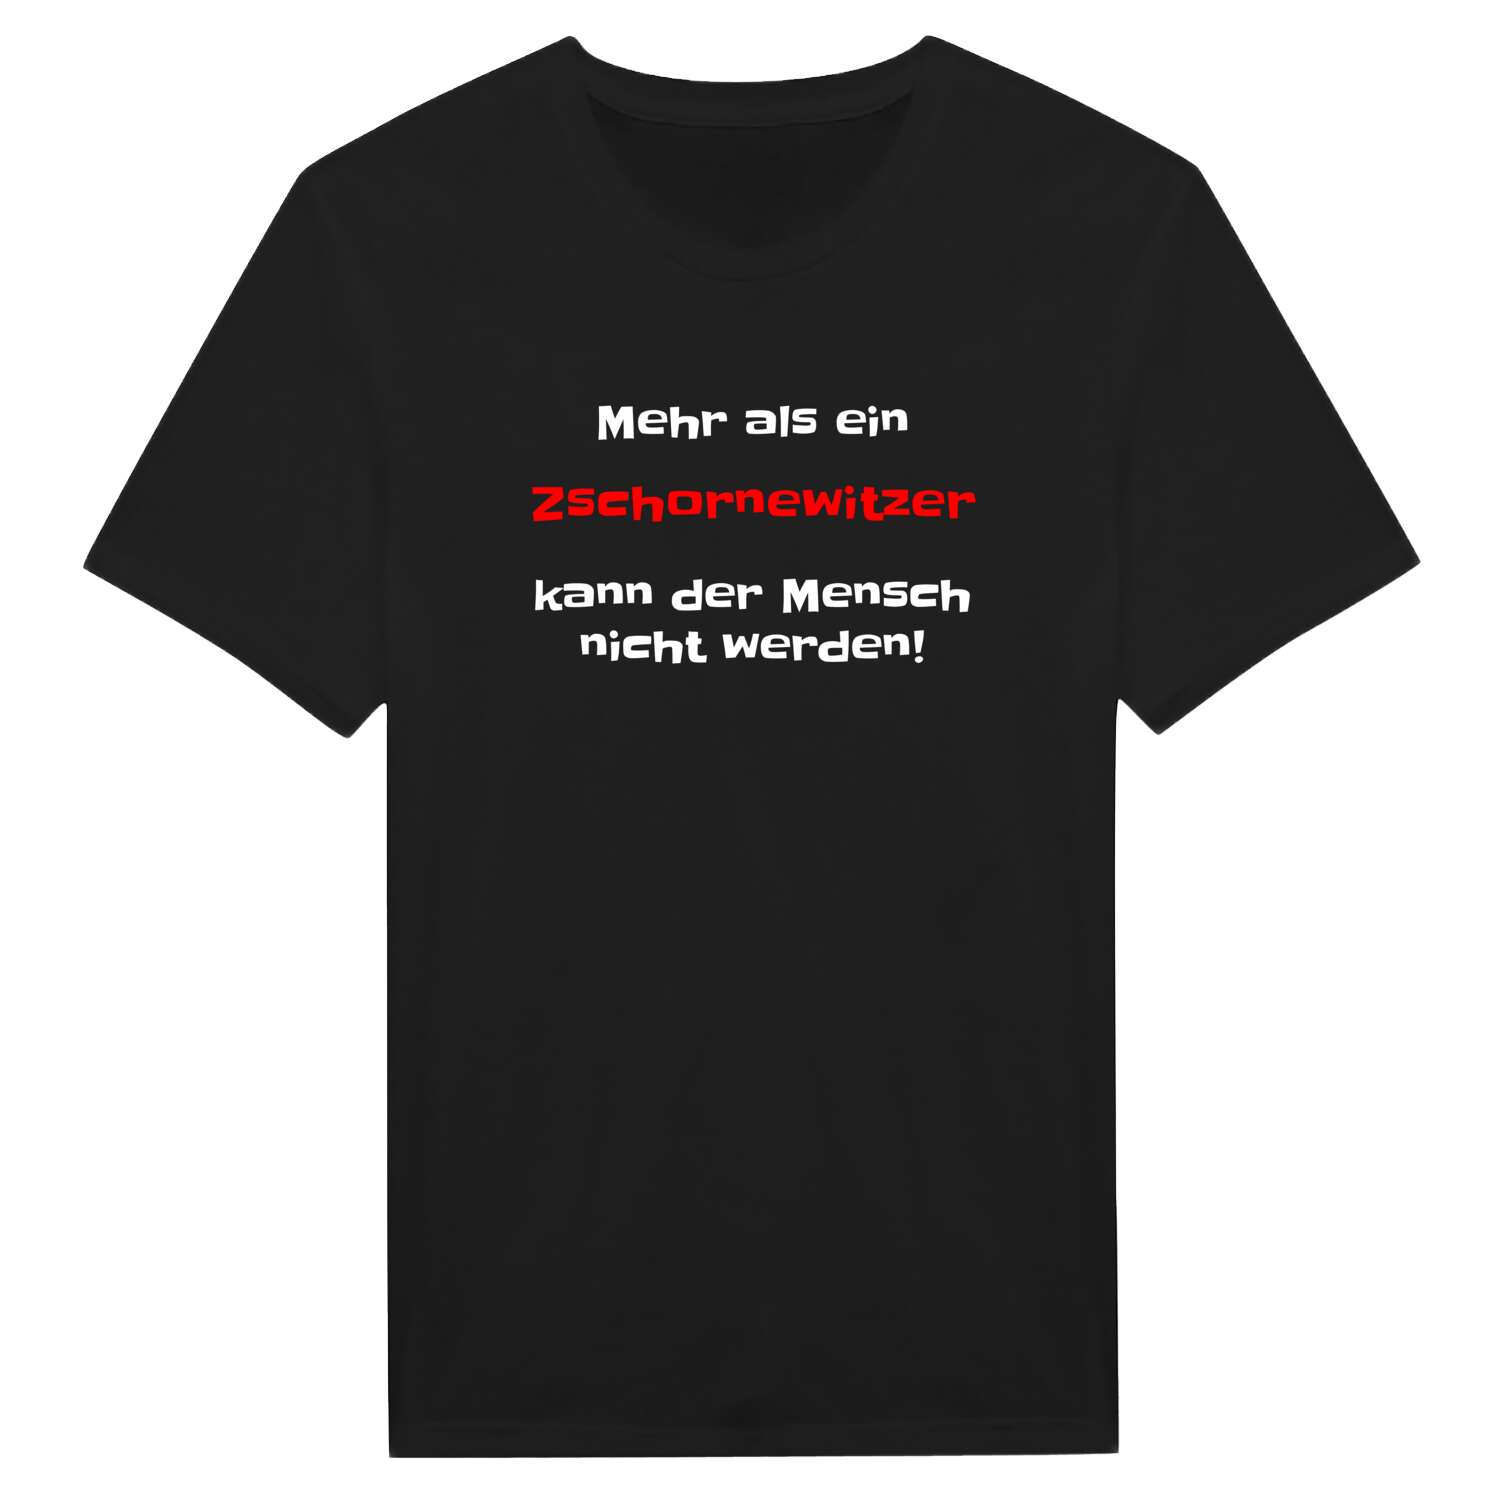 Zschornewitz T-Shirt »Mehr als ein«